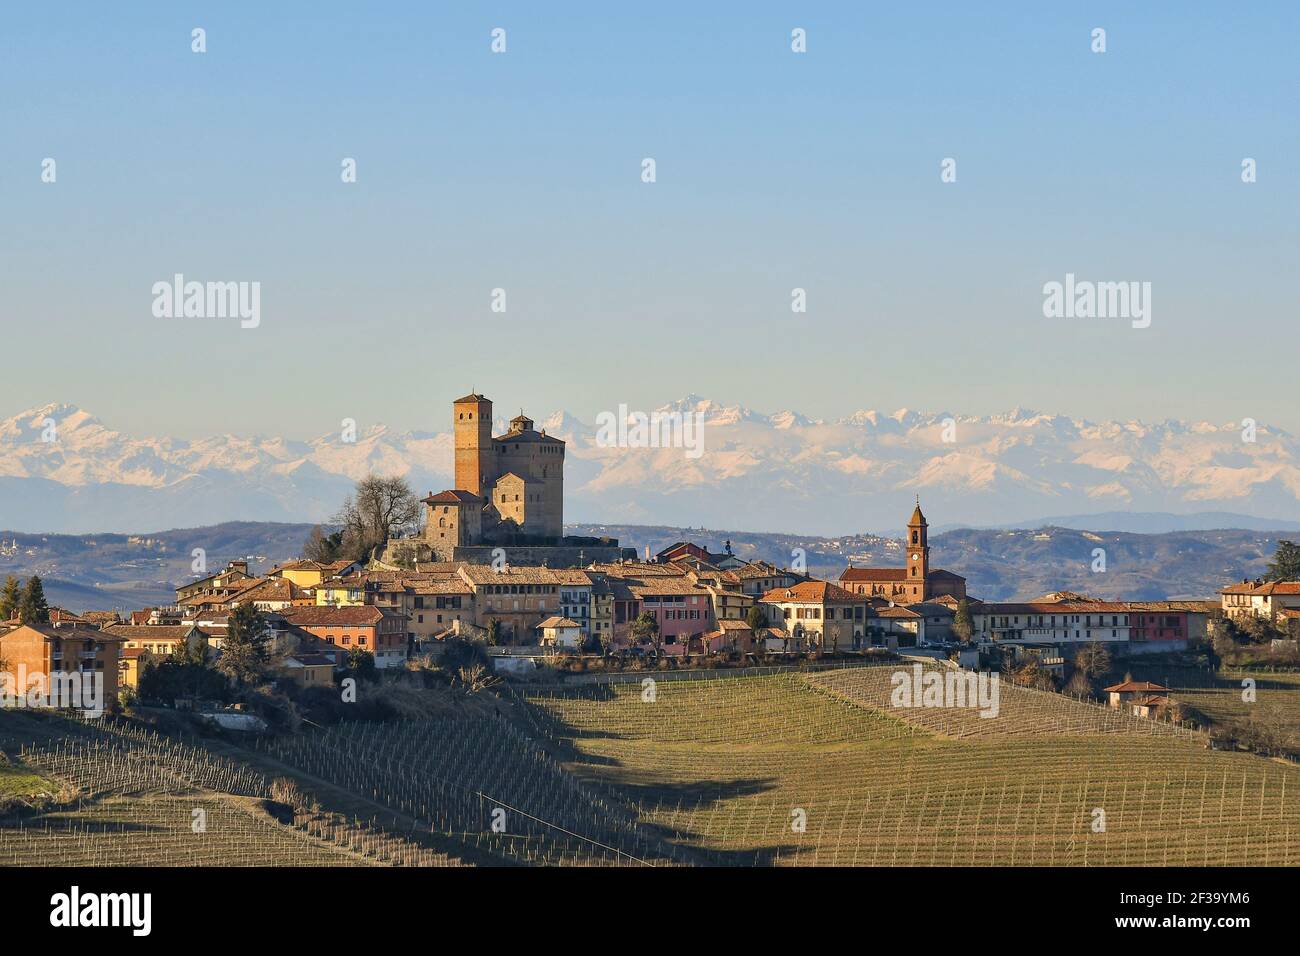 Vista sulle colline delle Langhe, patrimonio dell'umanità dell'UNESCO, con il borgo medievale di Serralunga d'Alba e le montagne delle Alpi, Cuneo, Piemonte, Italia Foto Stock